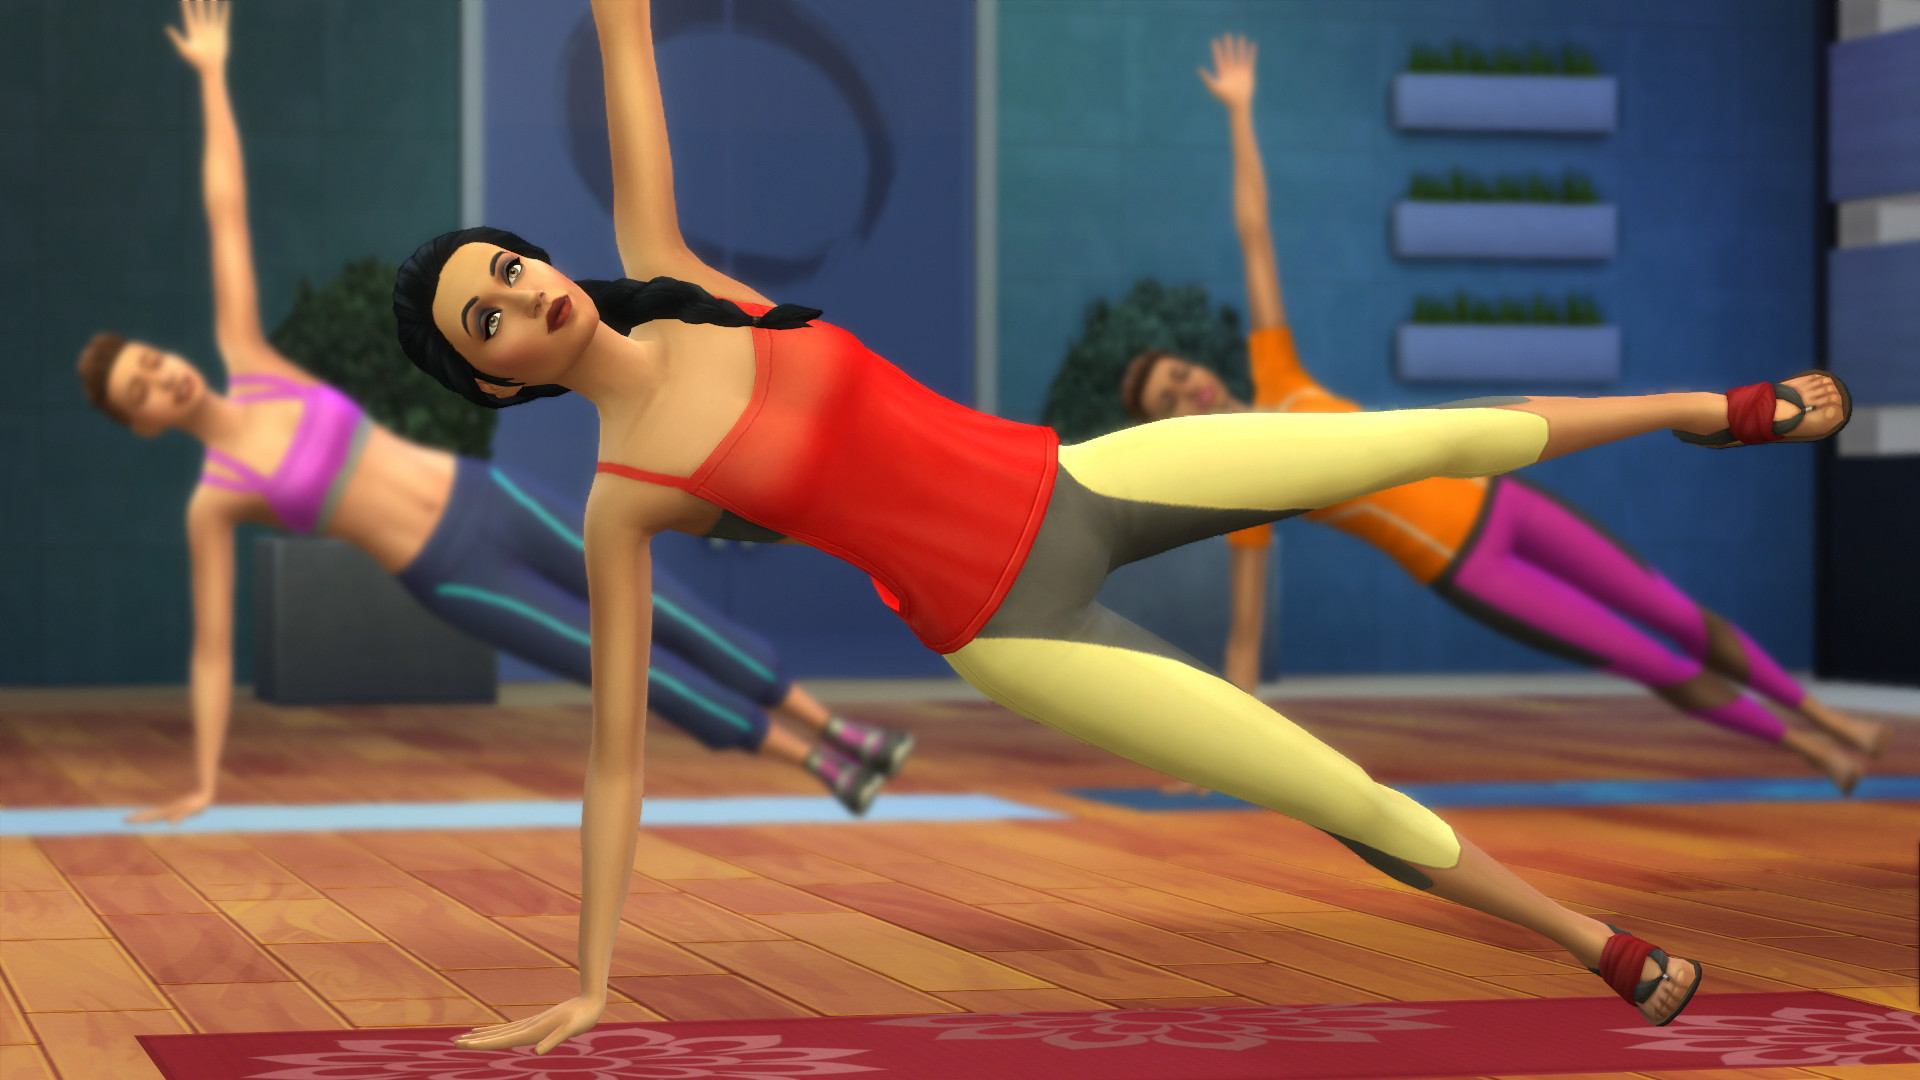 Сэкономьте 30% при покупке The Sims™ 4 Фитнес — Каталог в Steam